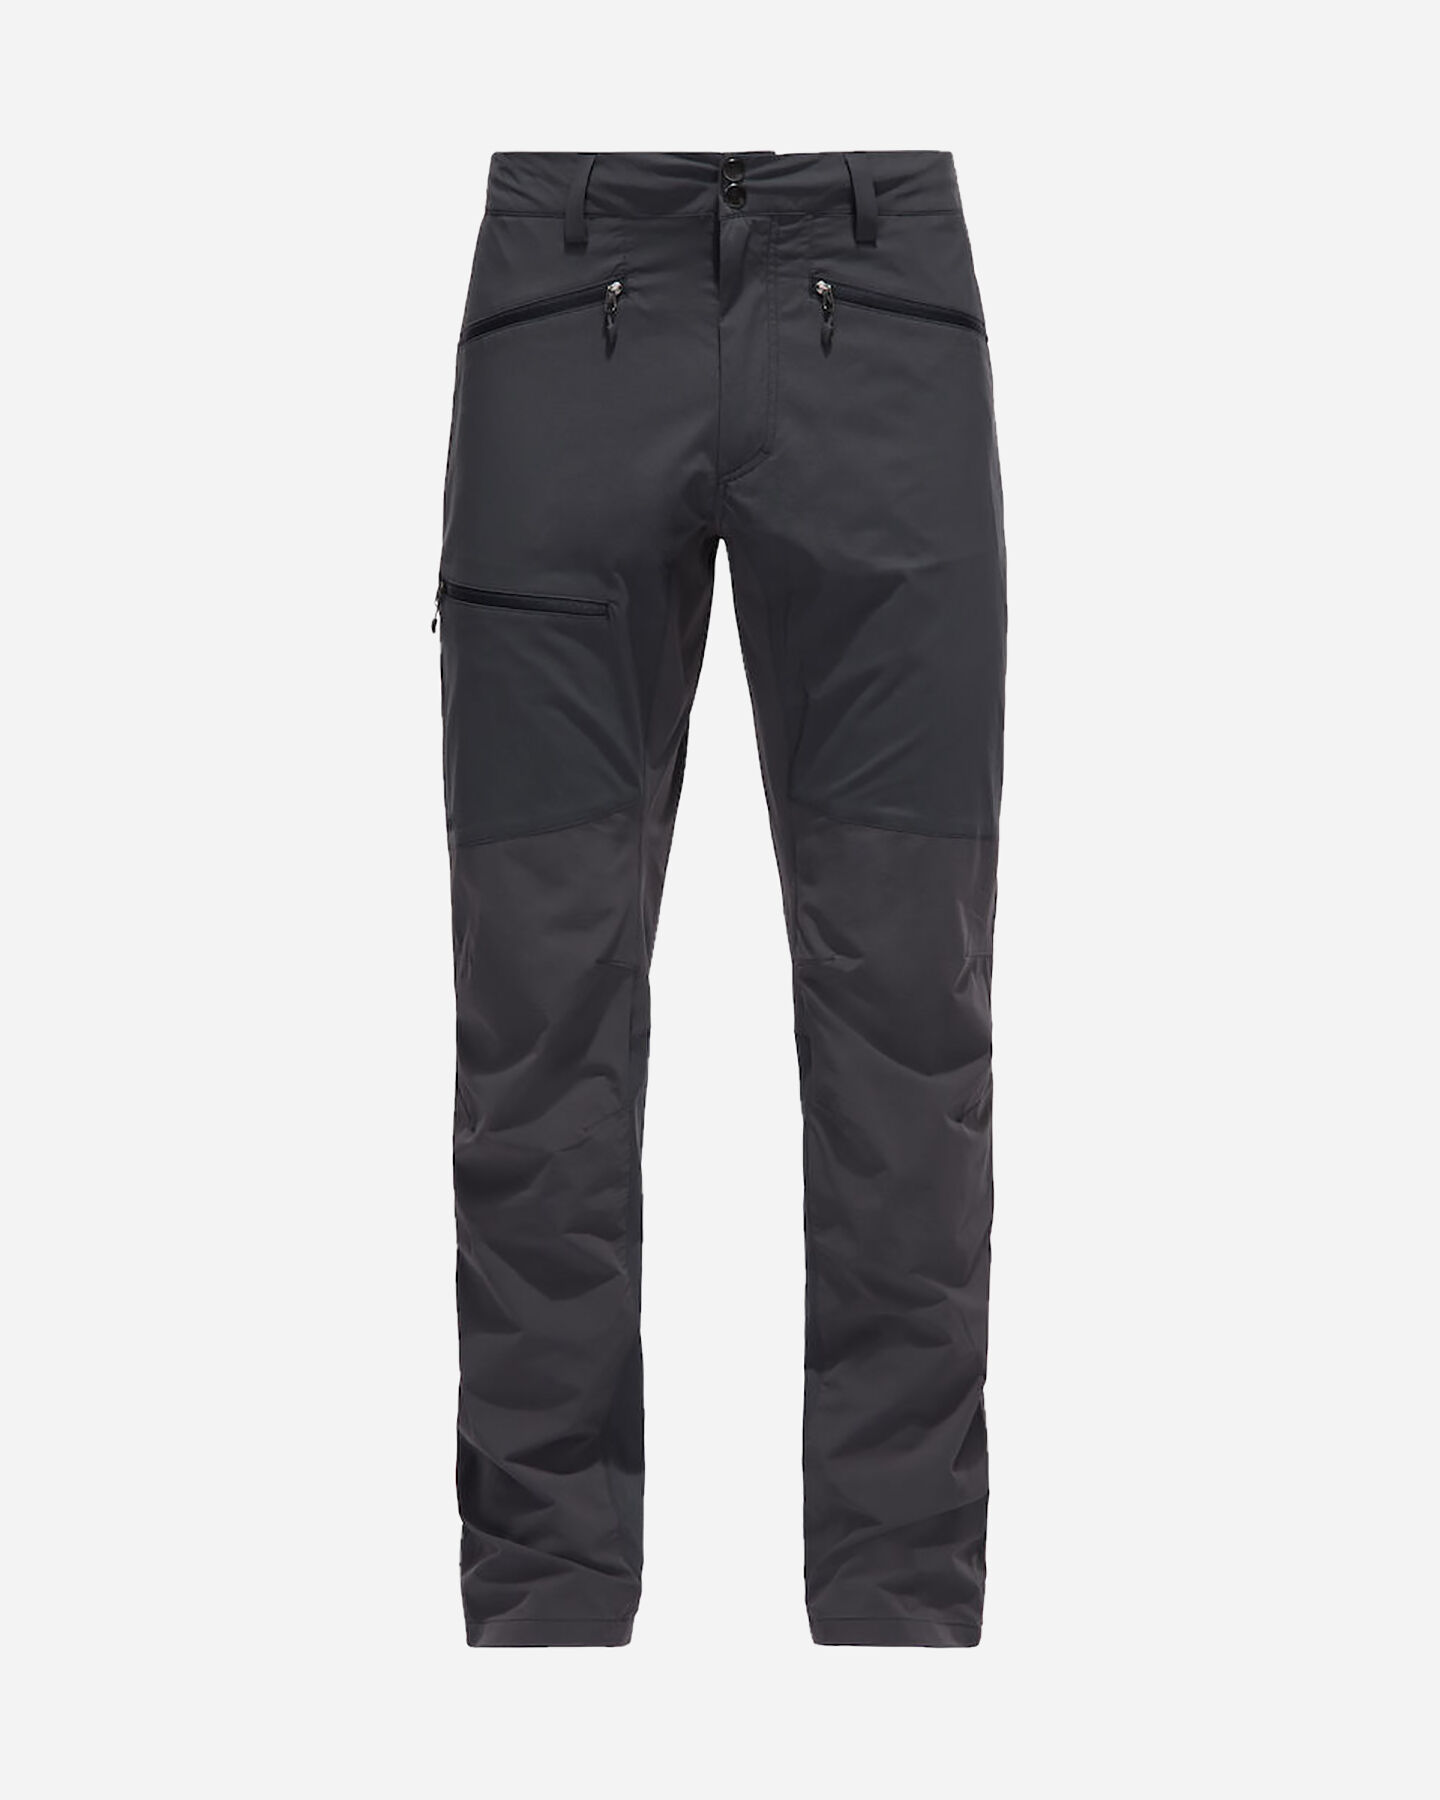  Pantalone outdoor HAGLOFS LITE FLEX  M S4077000|1|L scatto 0